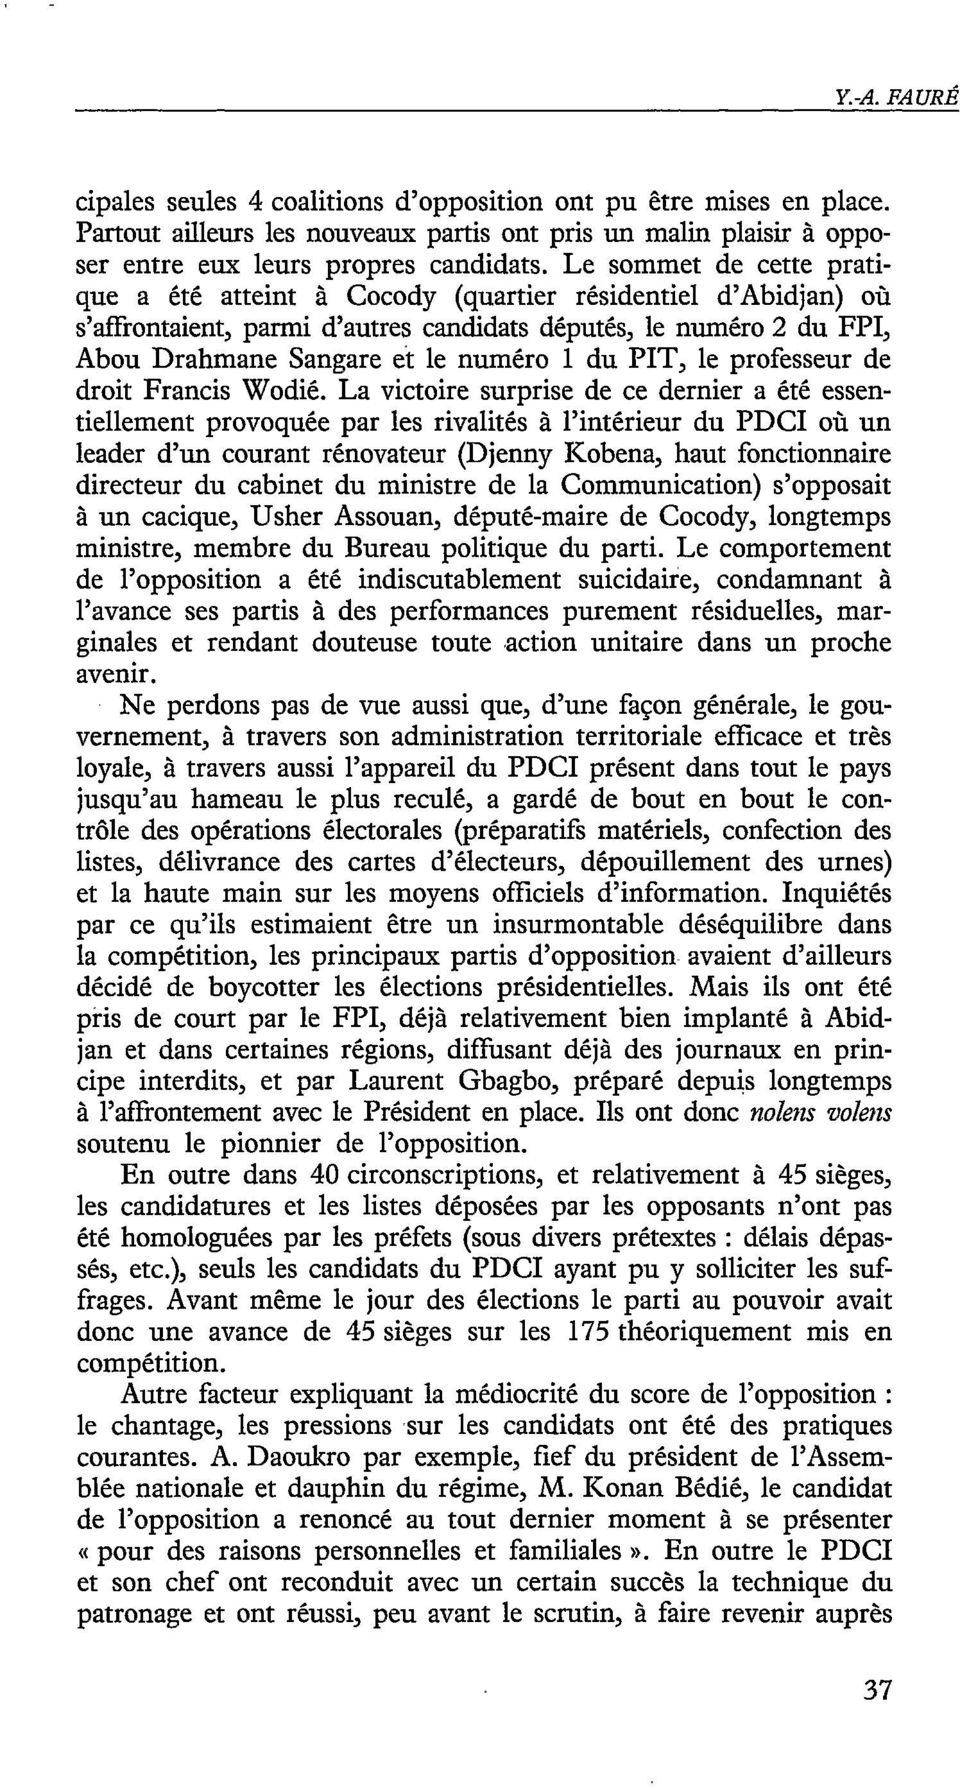 PIT, le professeur de droit Francis Wodié.